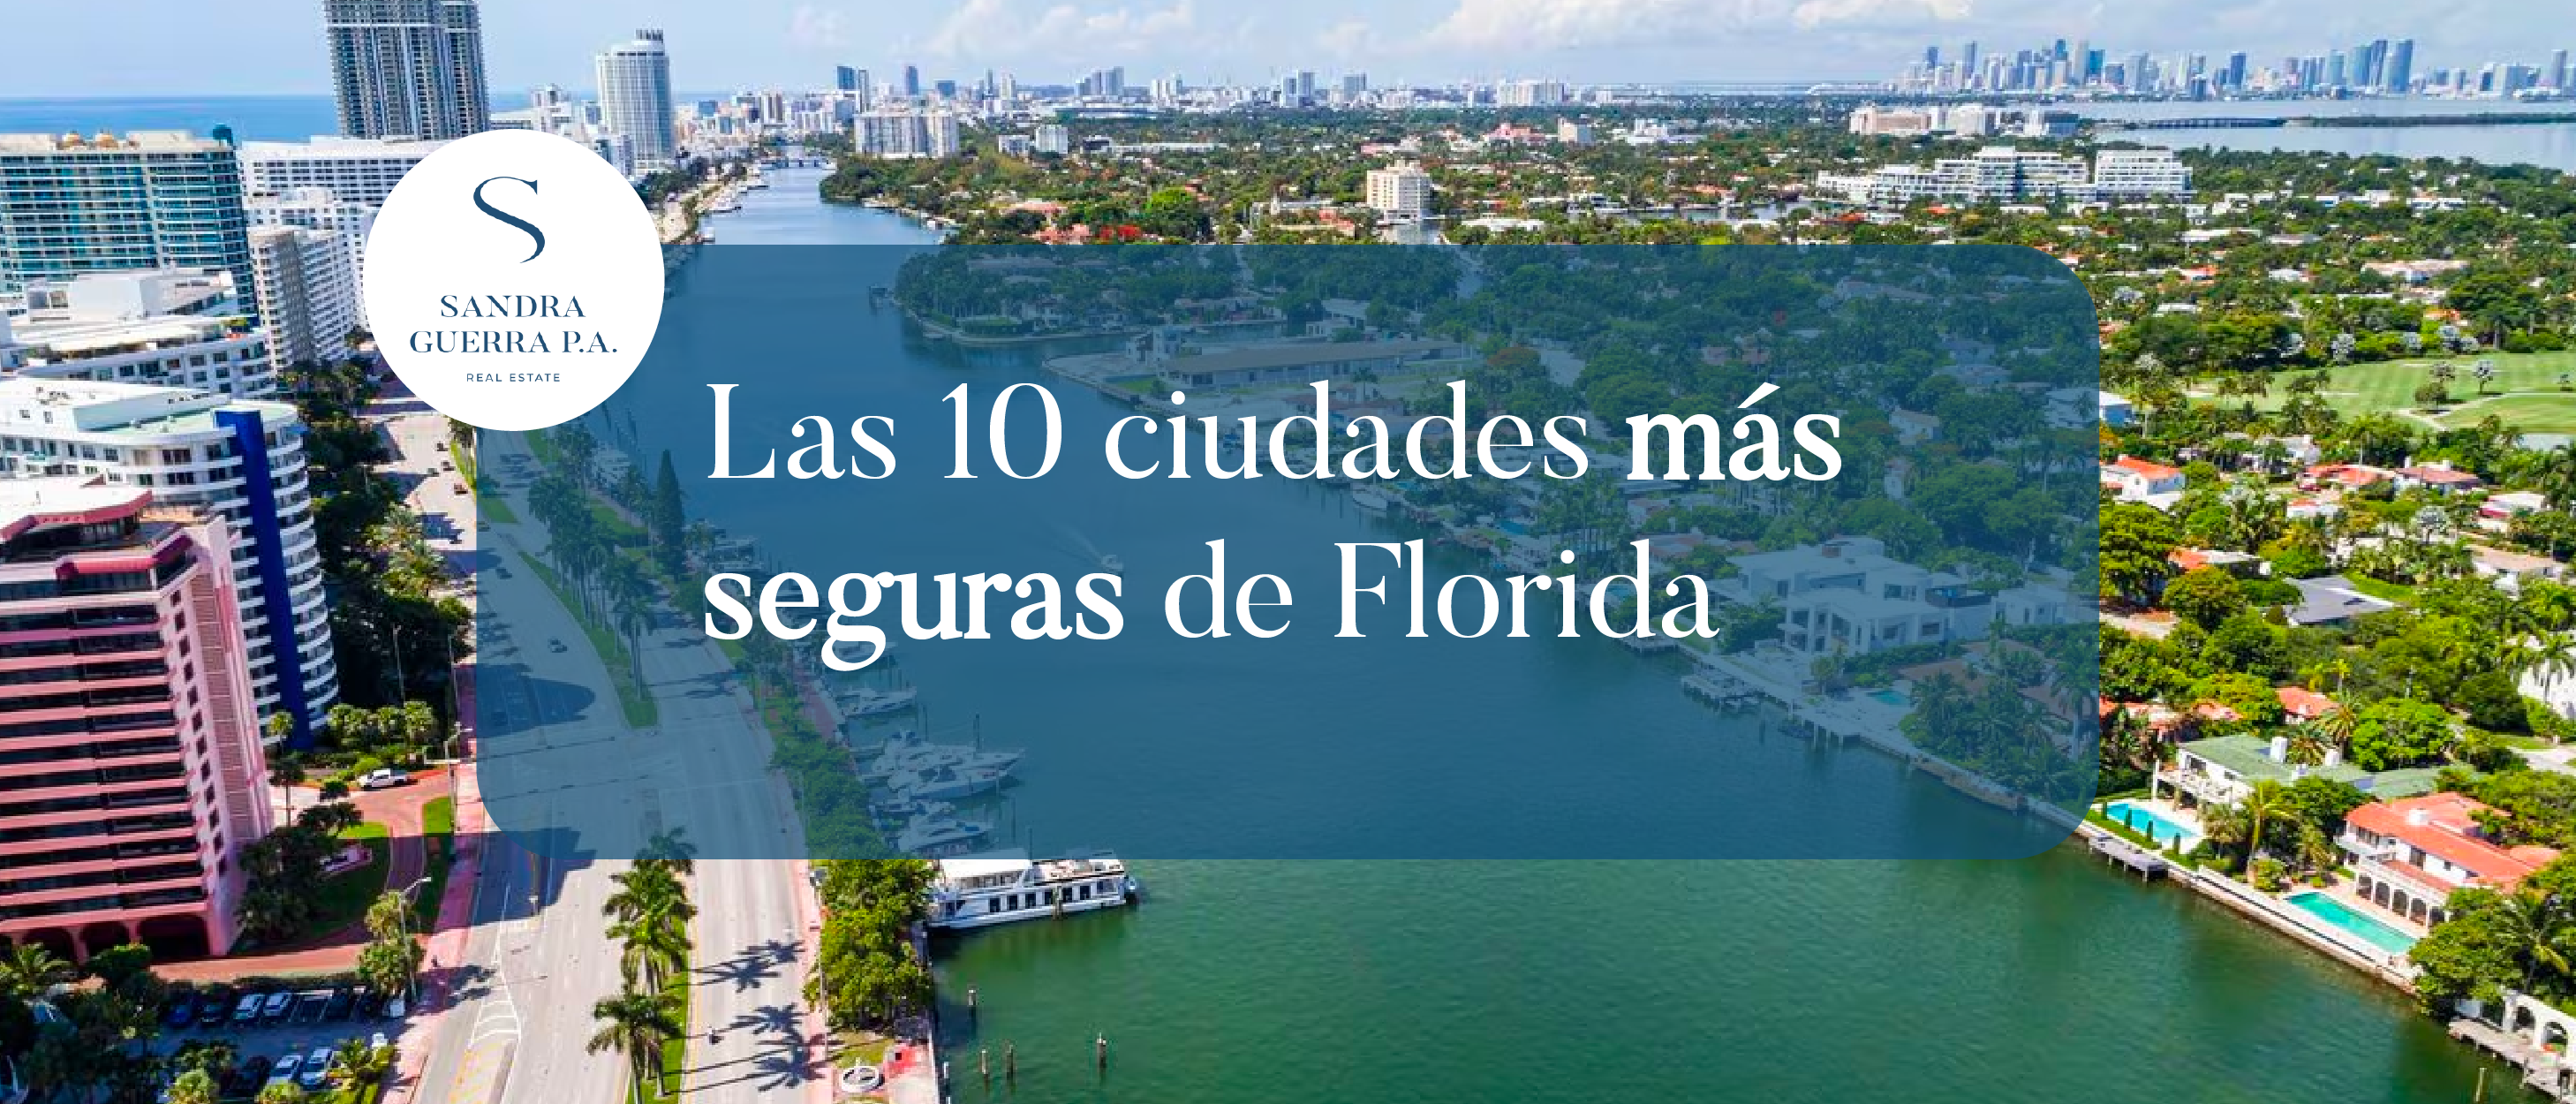 Las ciudades más seguras de Florida